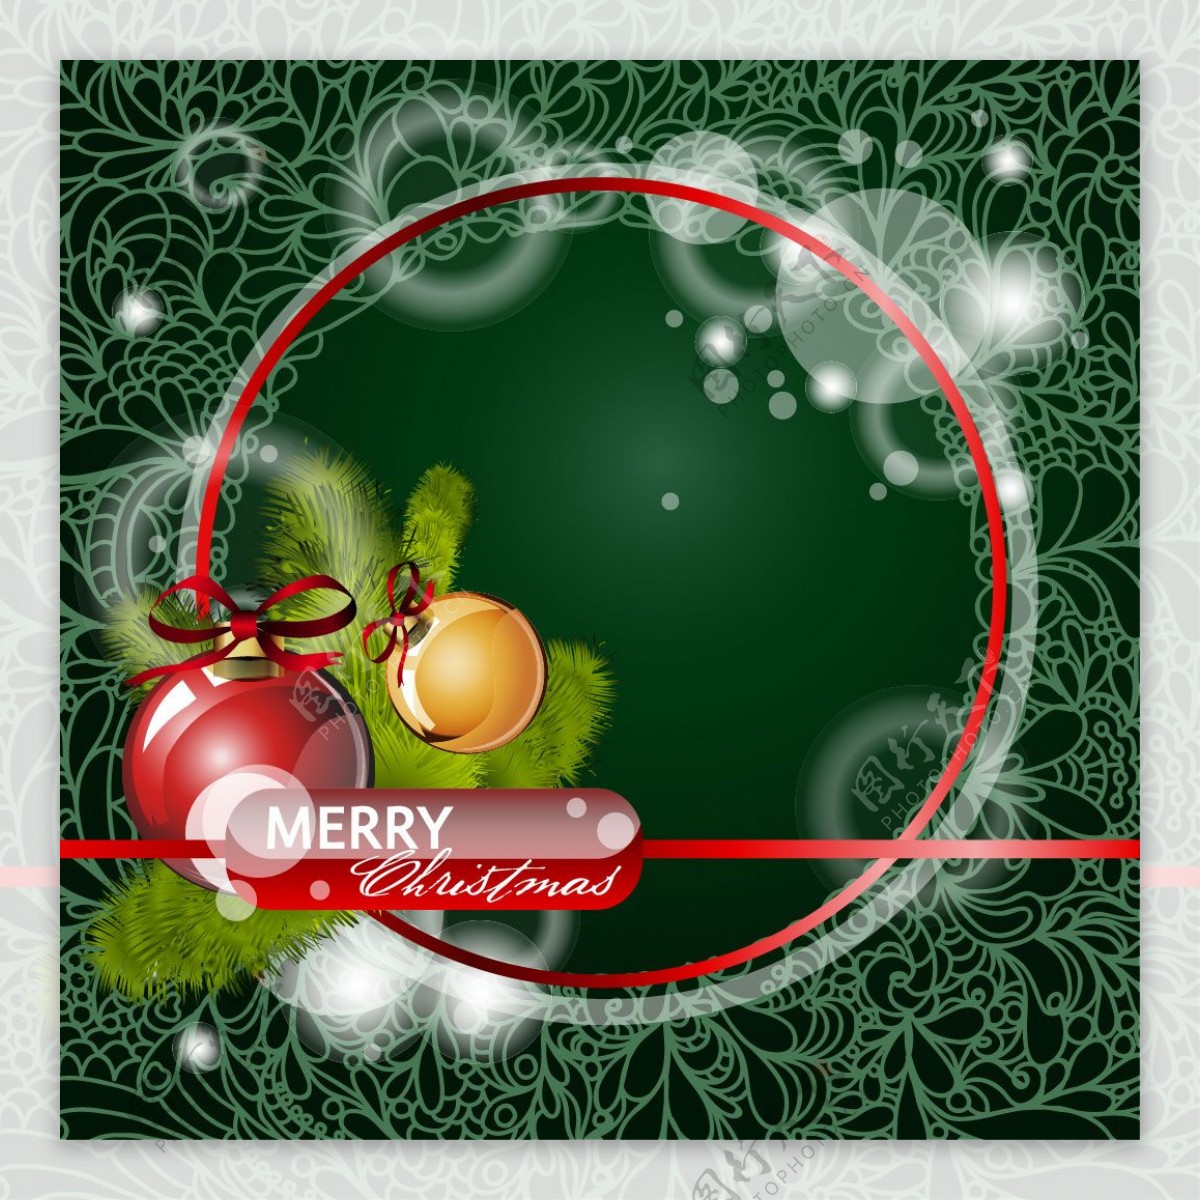 红色圆形边框的圣诞背景